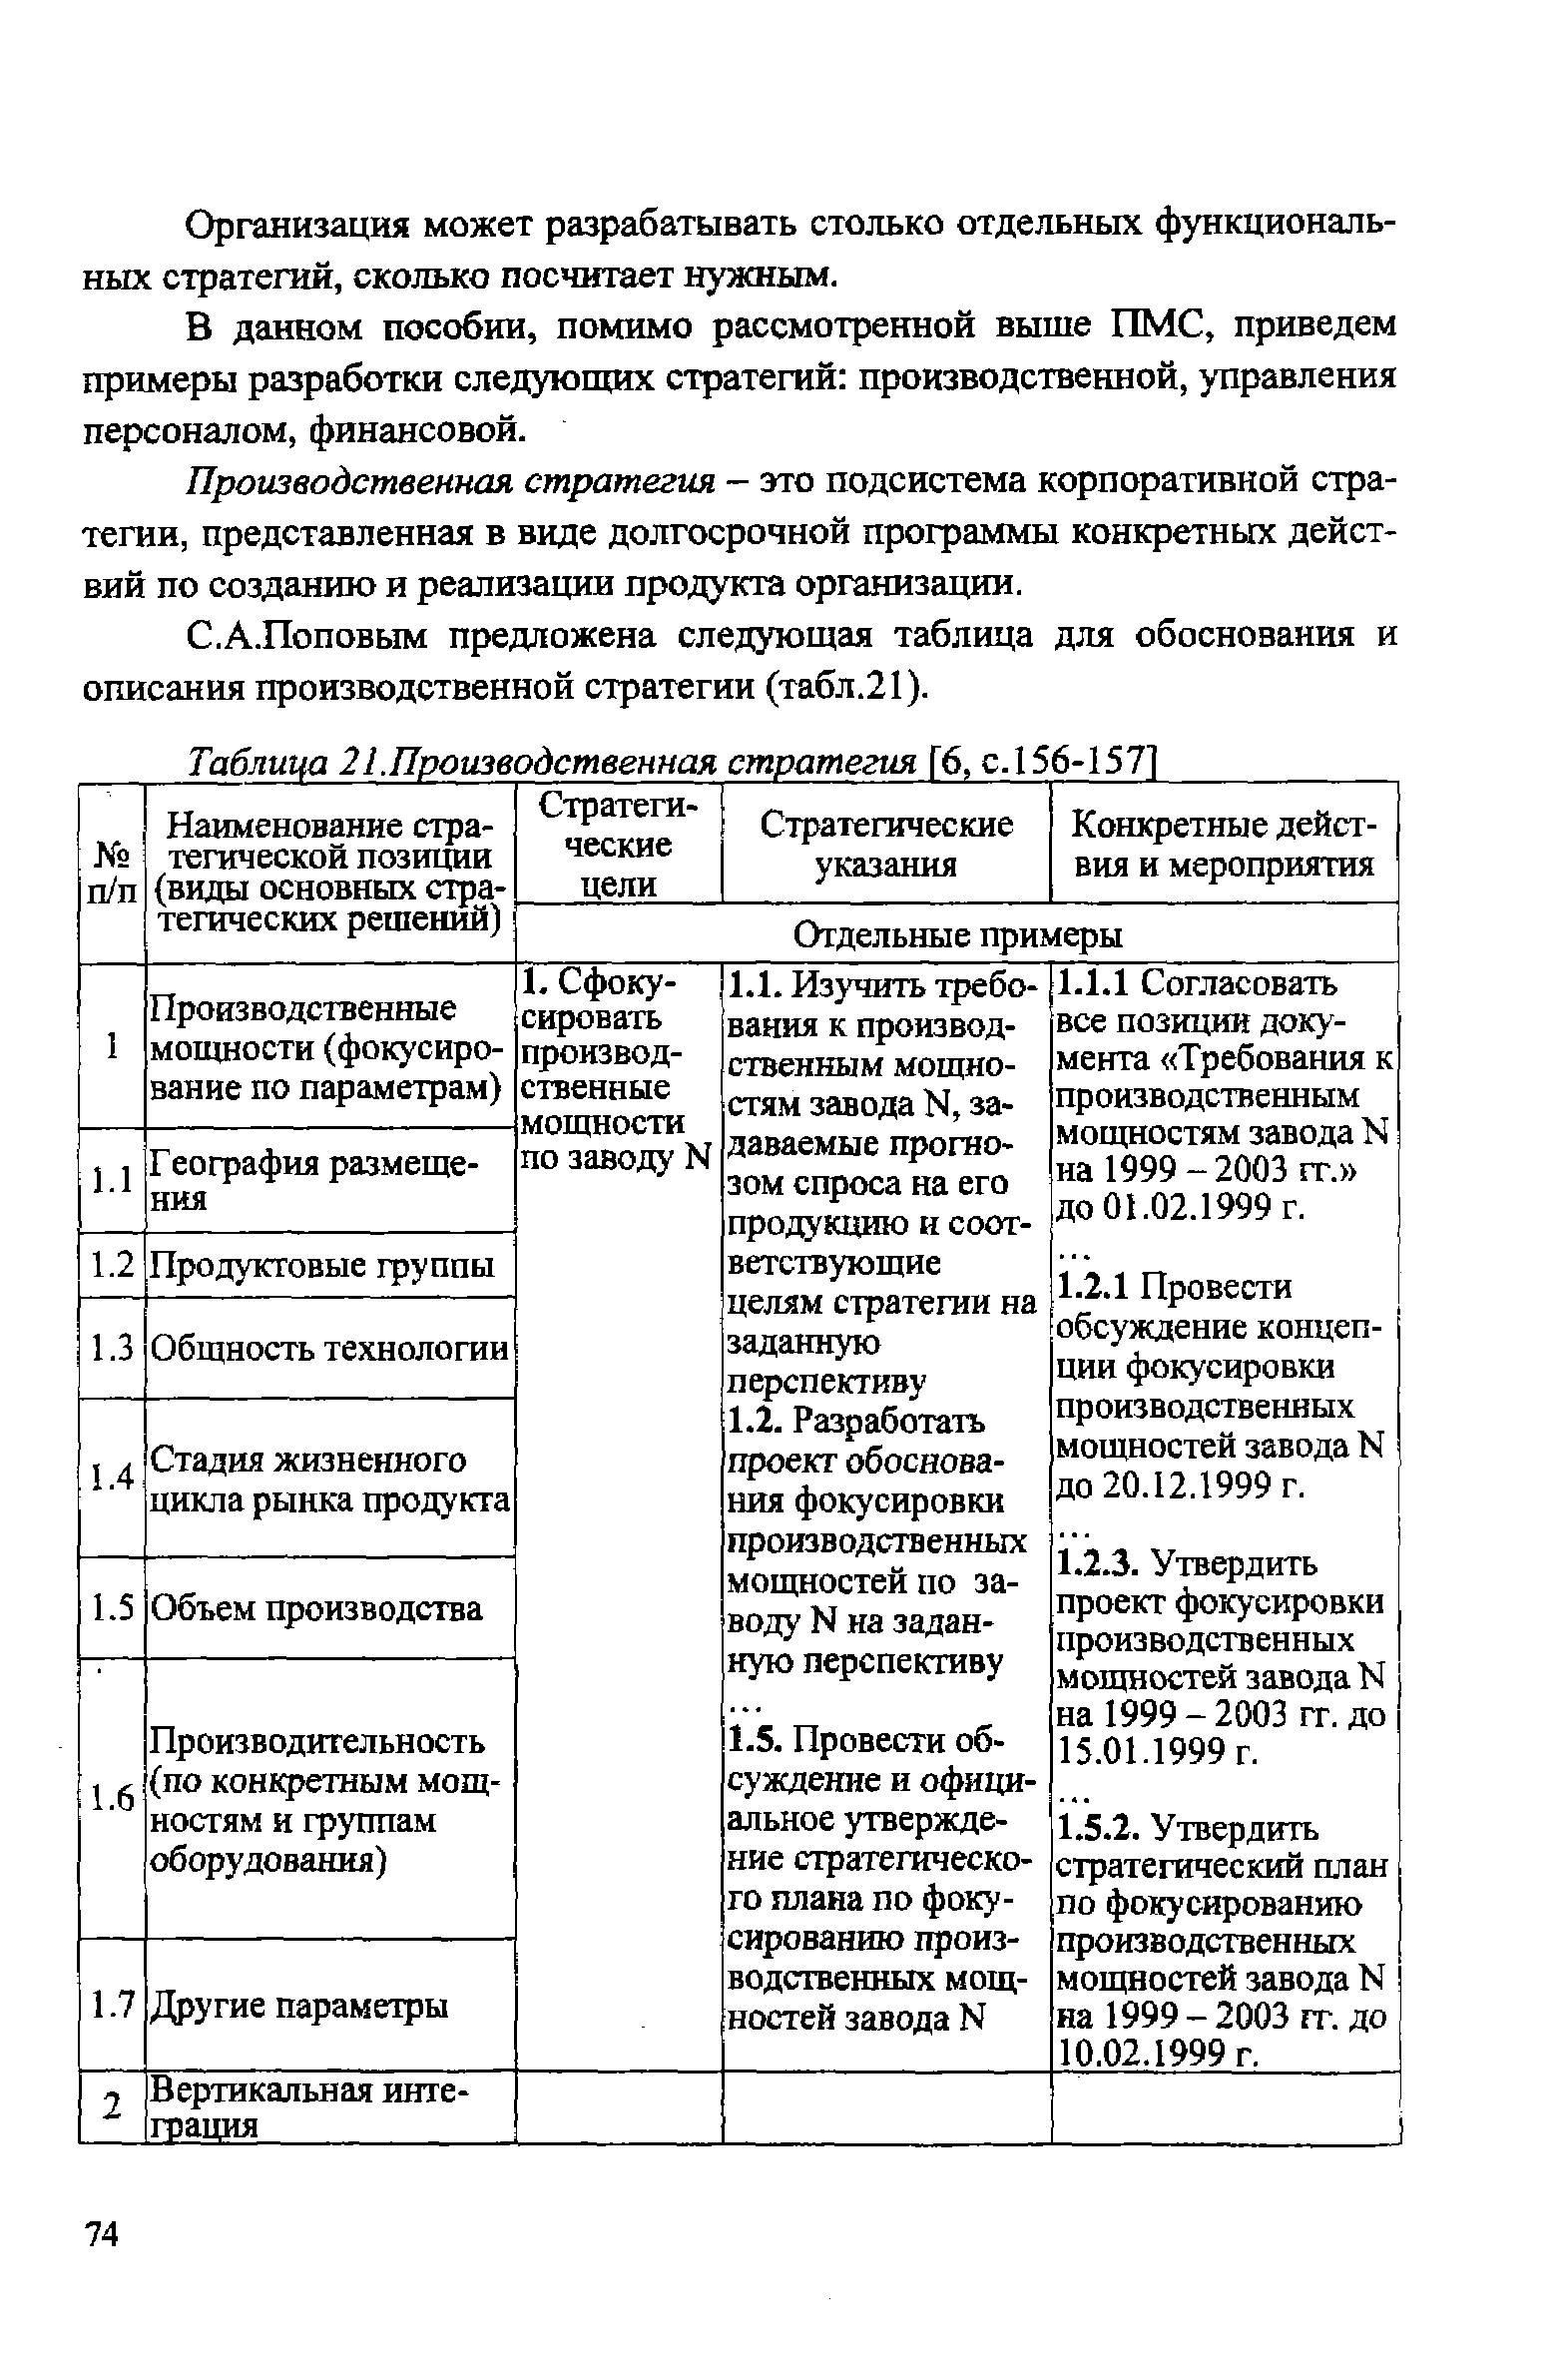 Таблица 21.Производственная стратегия [6, с.156-1571
